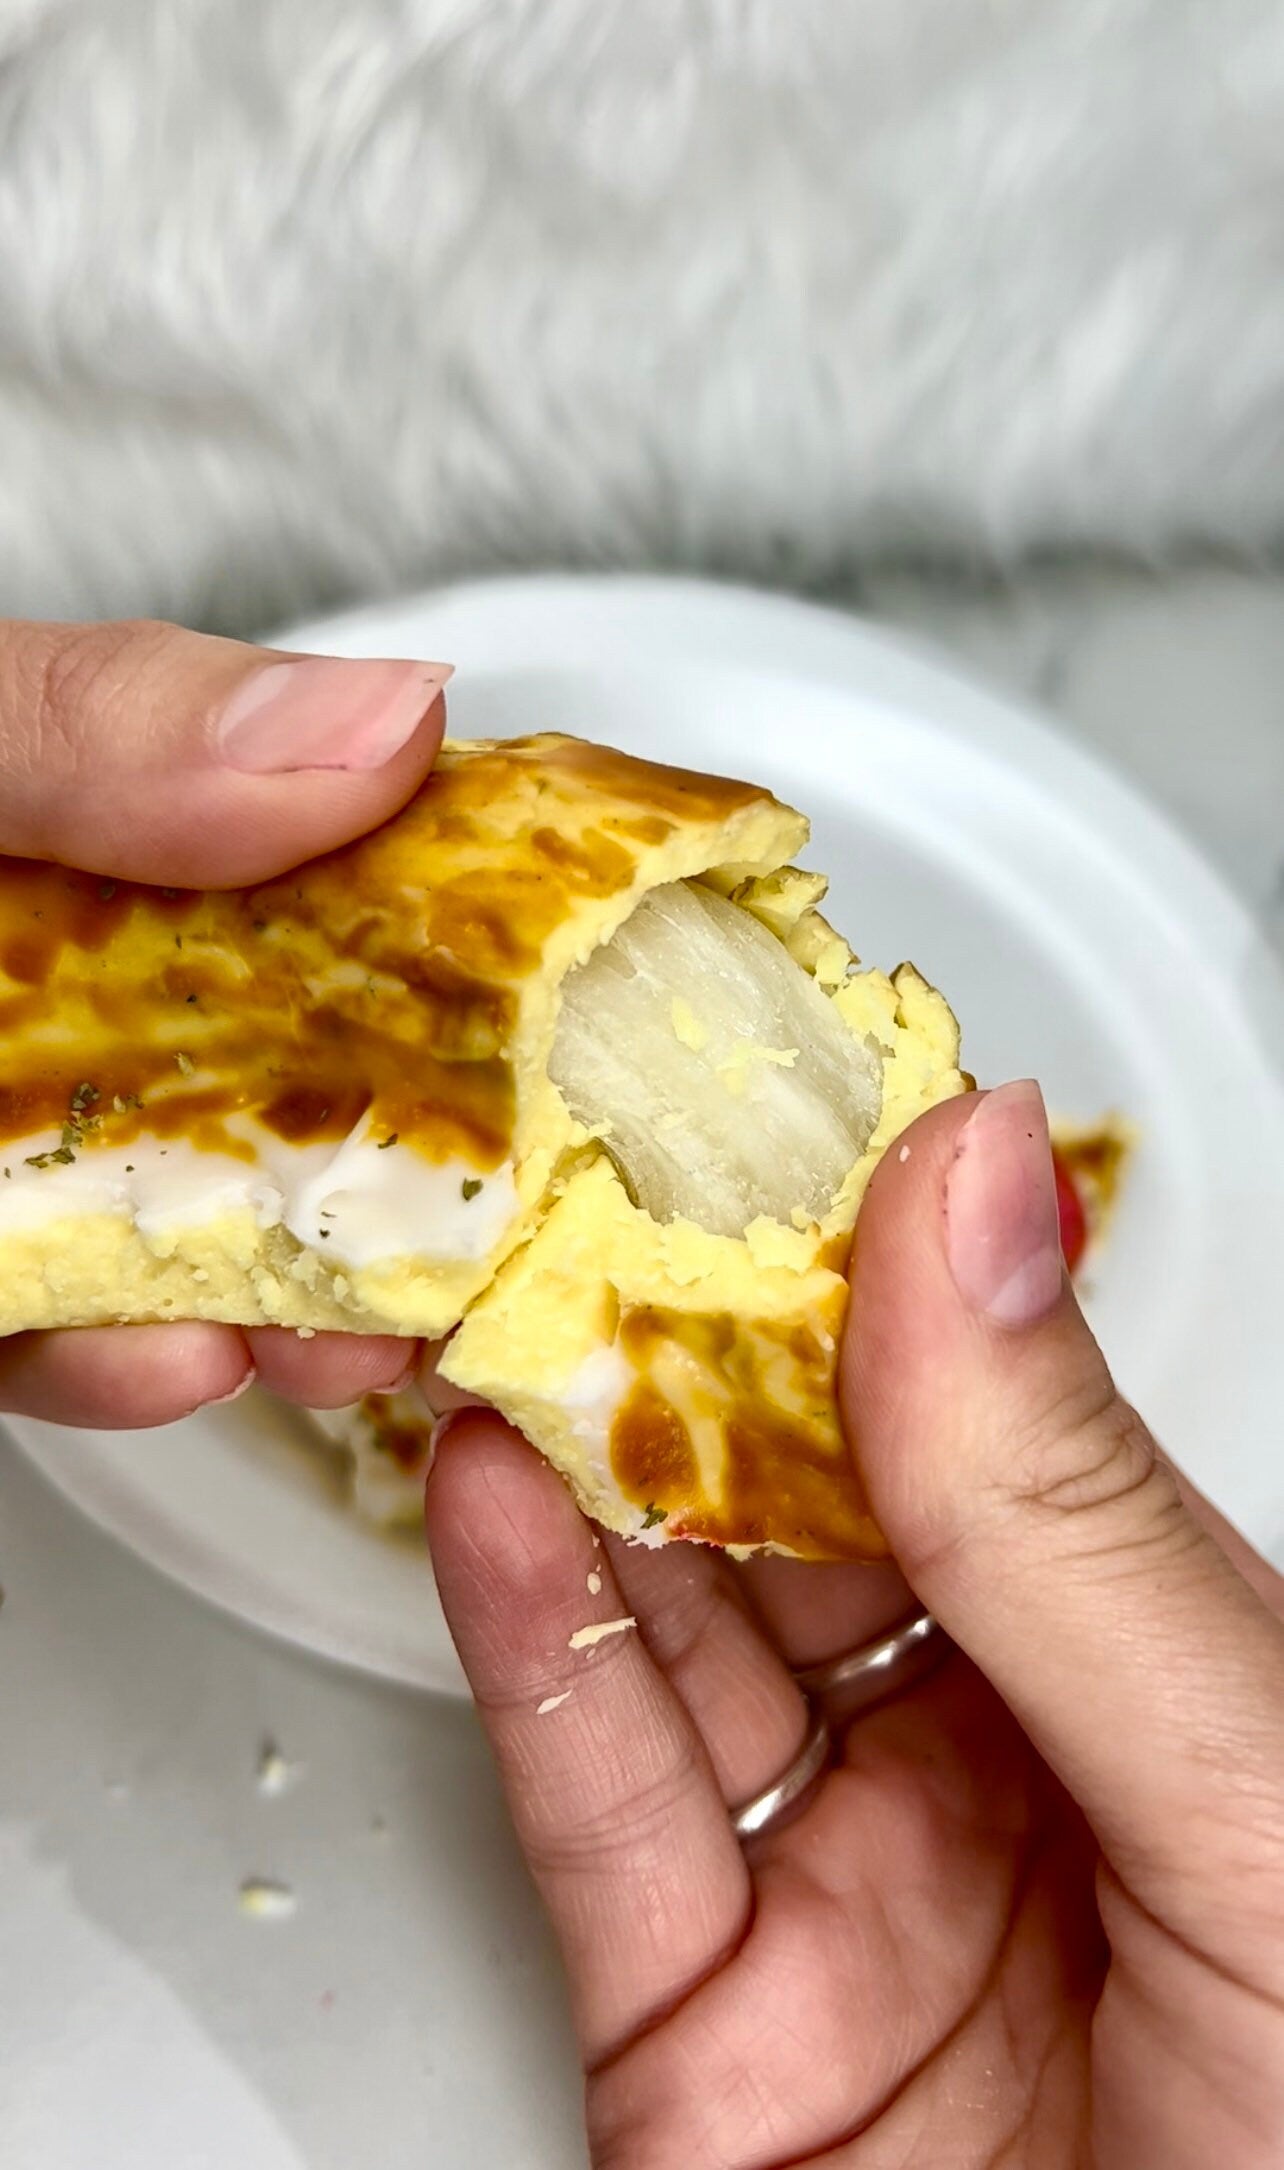 Stuffed crust pizza slice wax melts